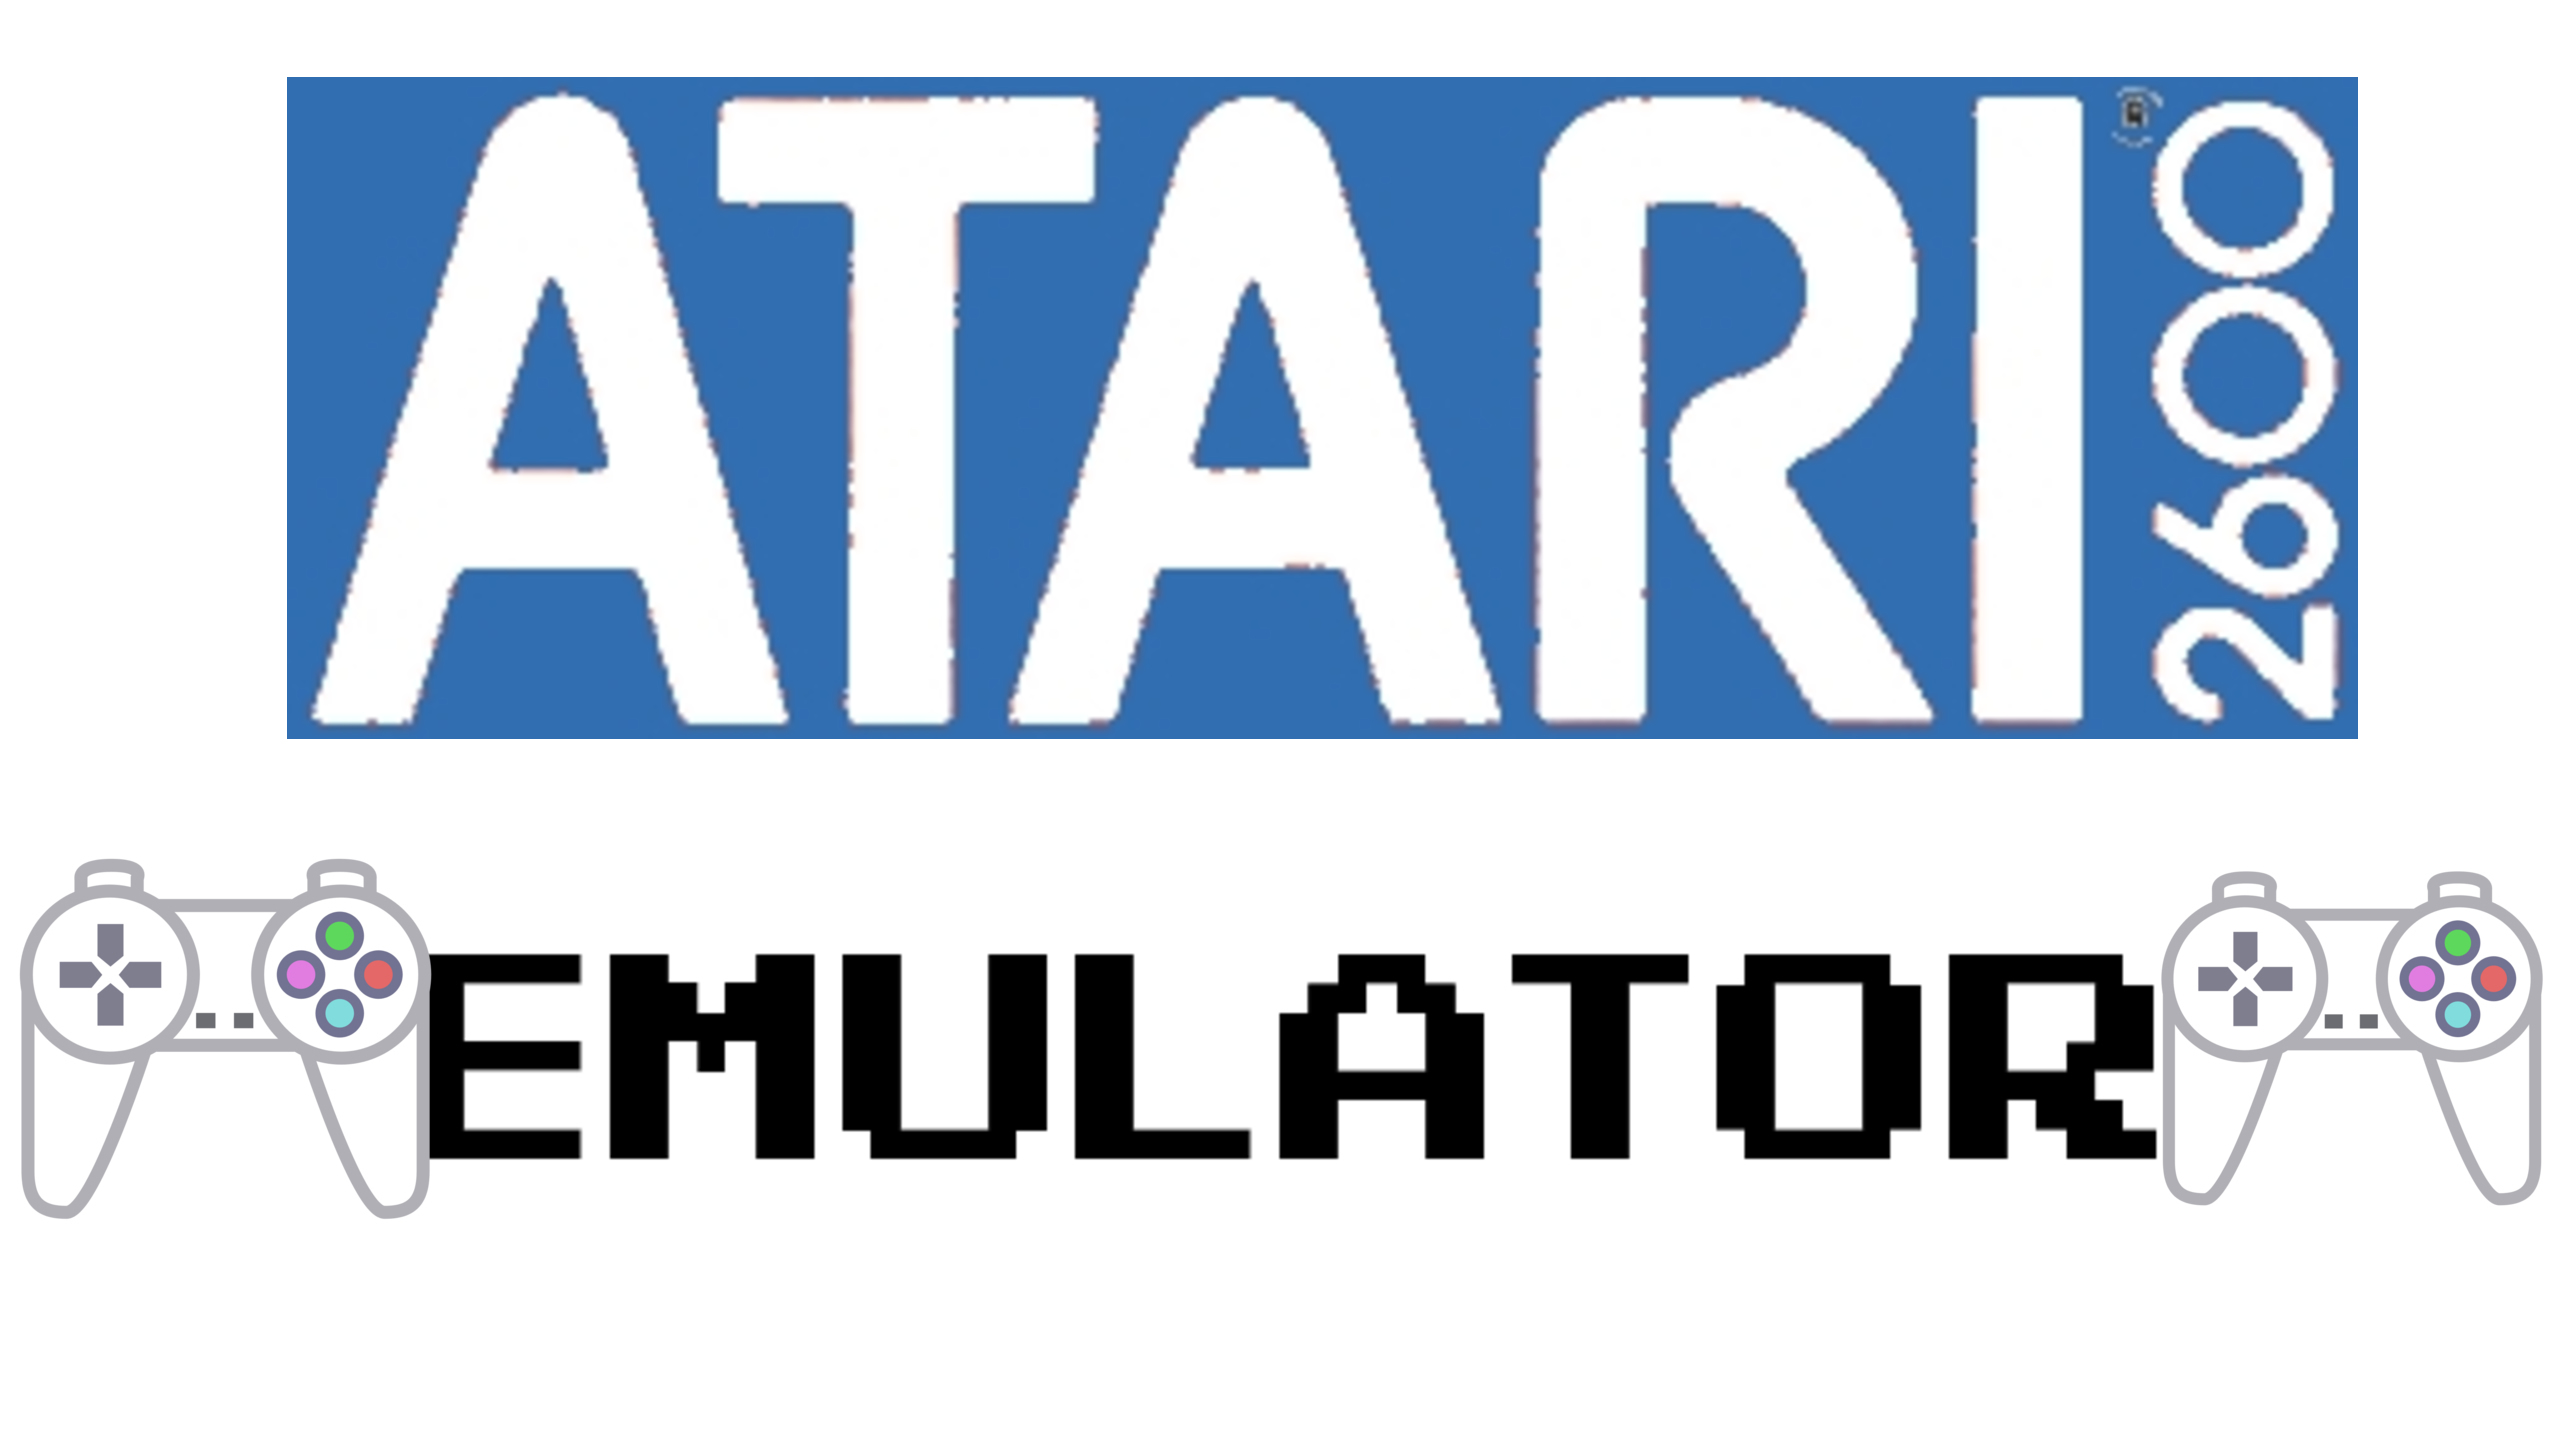 atari emulator for mac